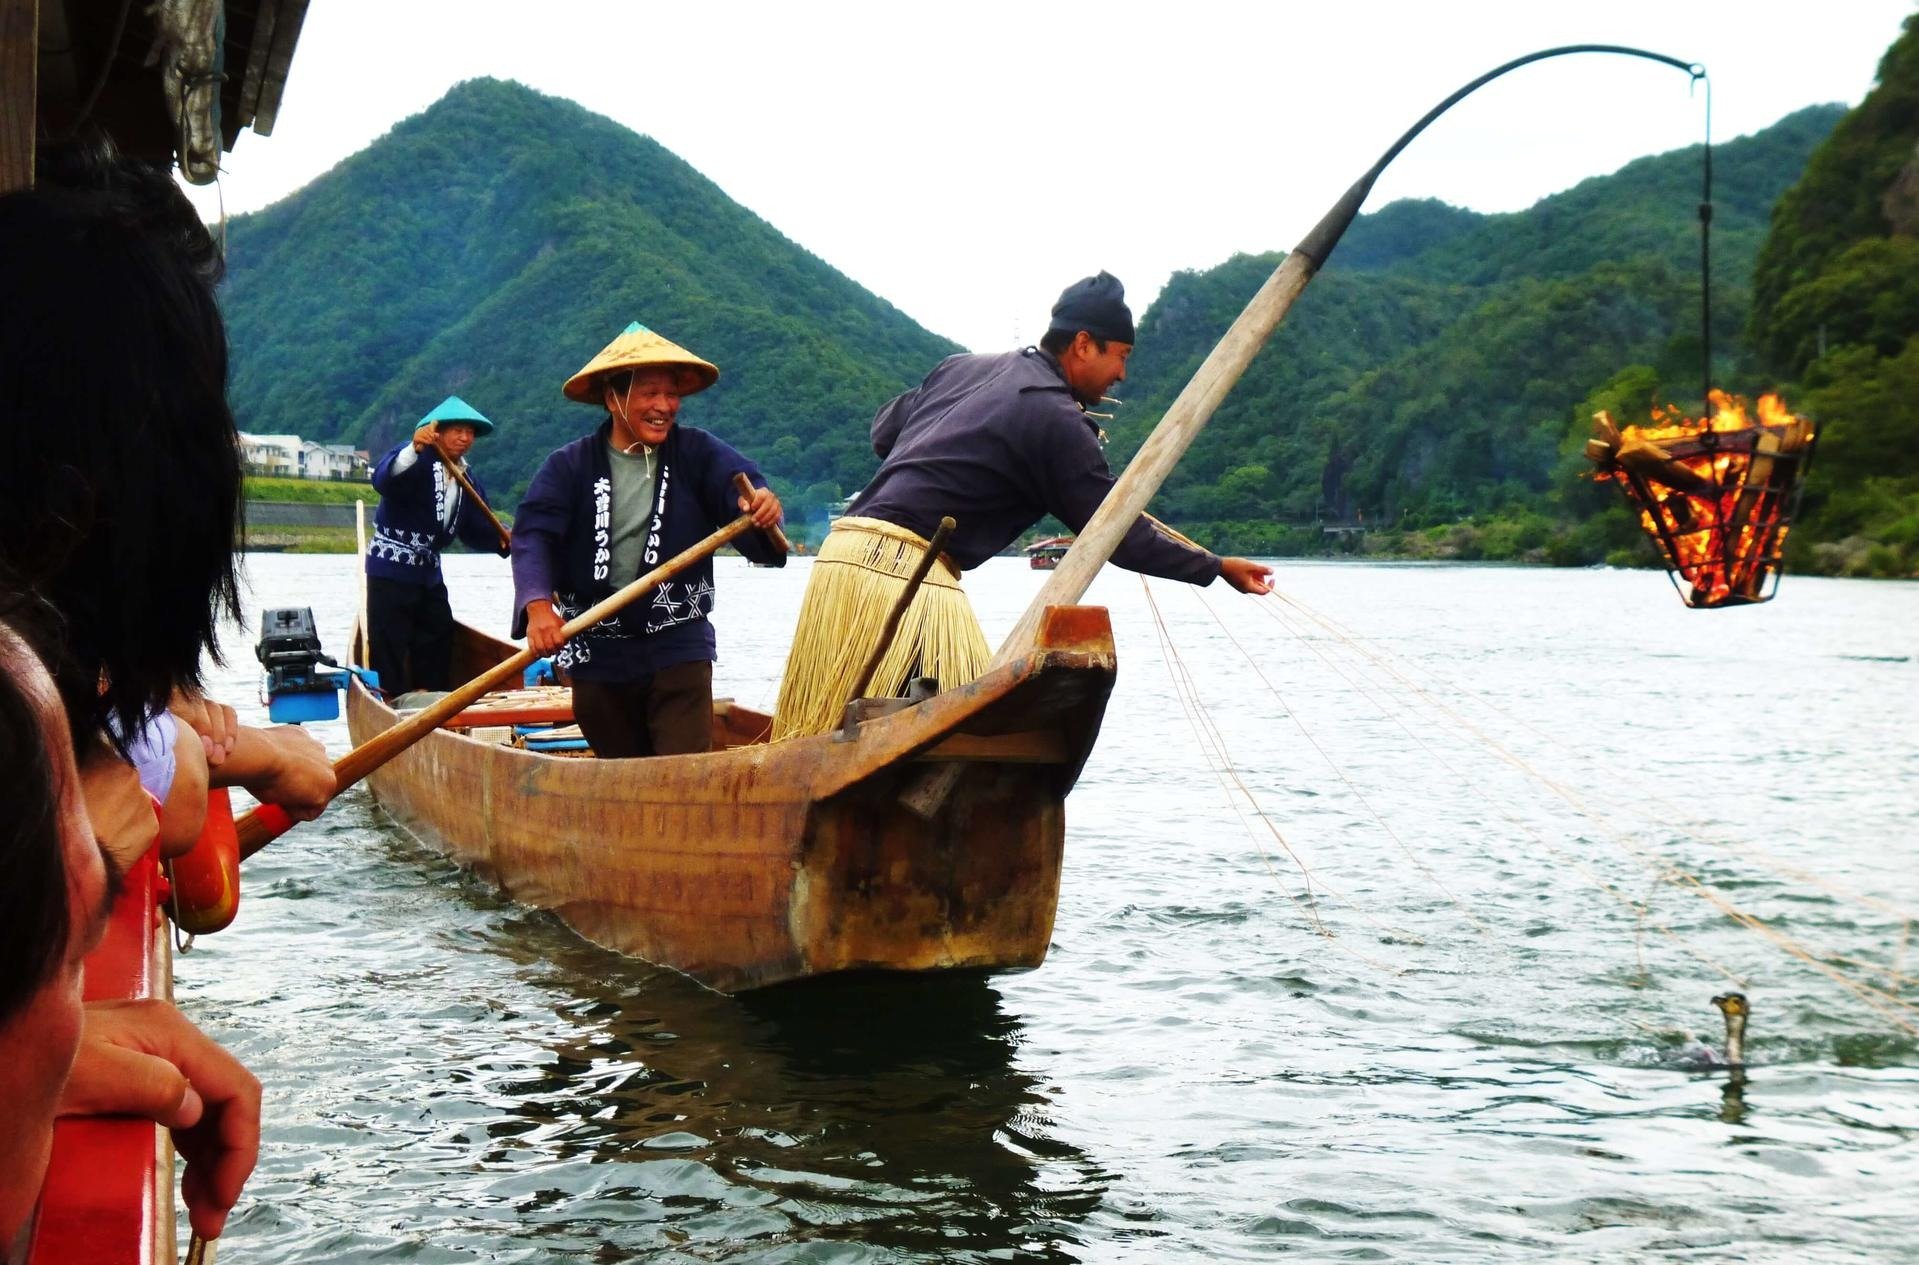 Сельское хозяйство и промыслы. Сельское хозяйство Японии рыболовство. Япония рыбный промысел. Рыболовный промысел в Японии. Морской промысел Японии.